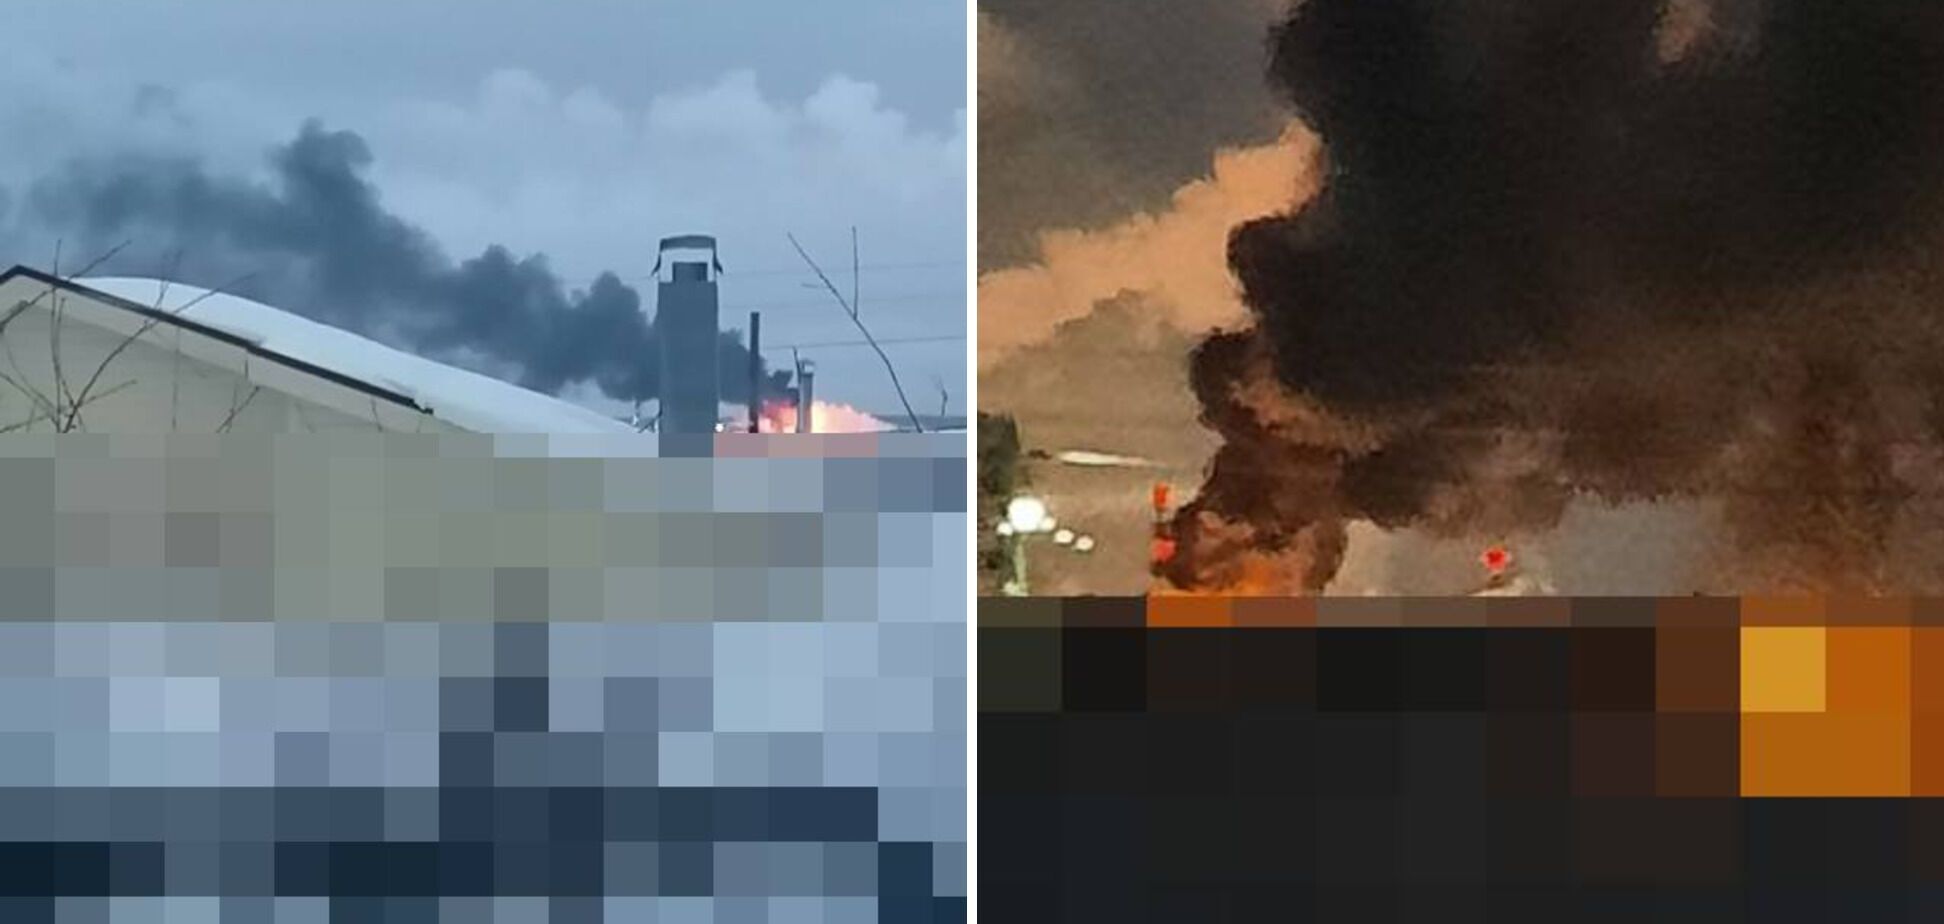 Піднявся стовп вогню і чорного диму: з'явилися фото потужної пожежі на НПЗ "Лукойл" у Росії після атаки дрона